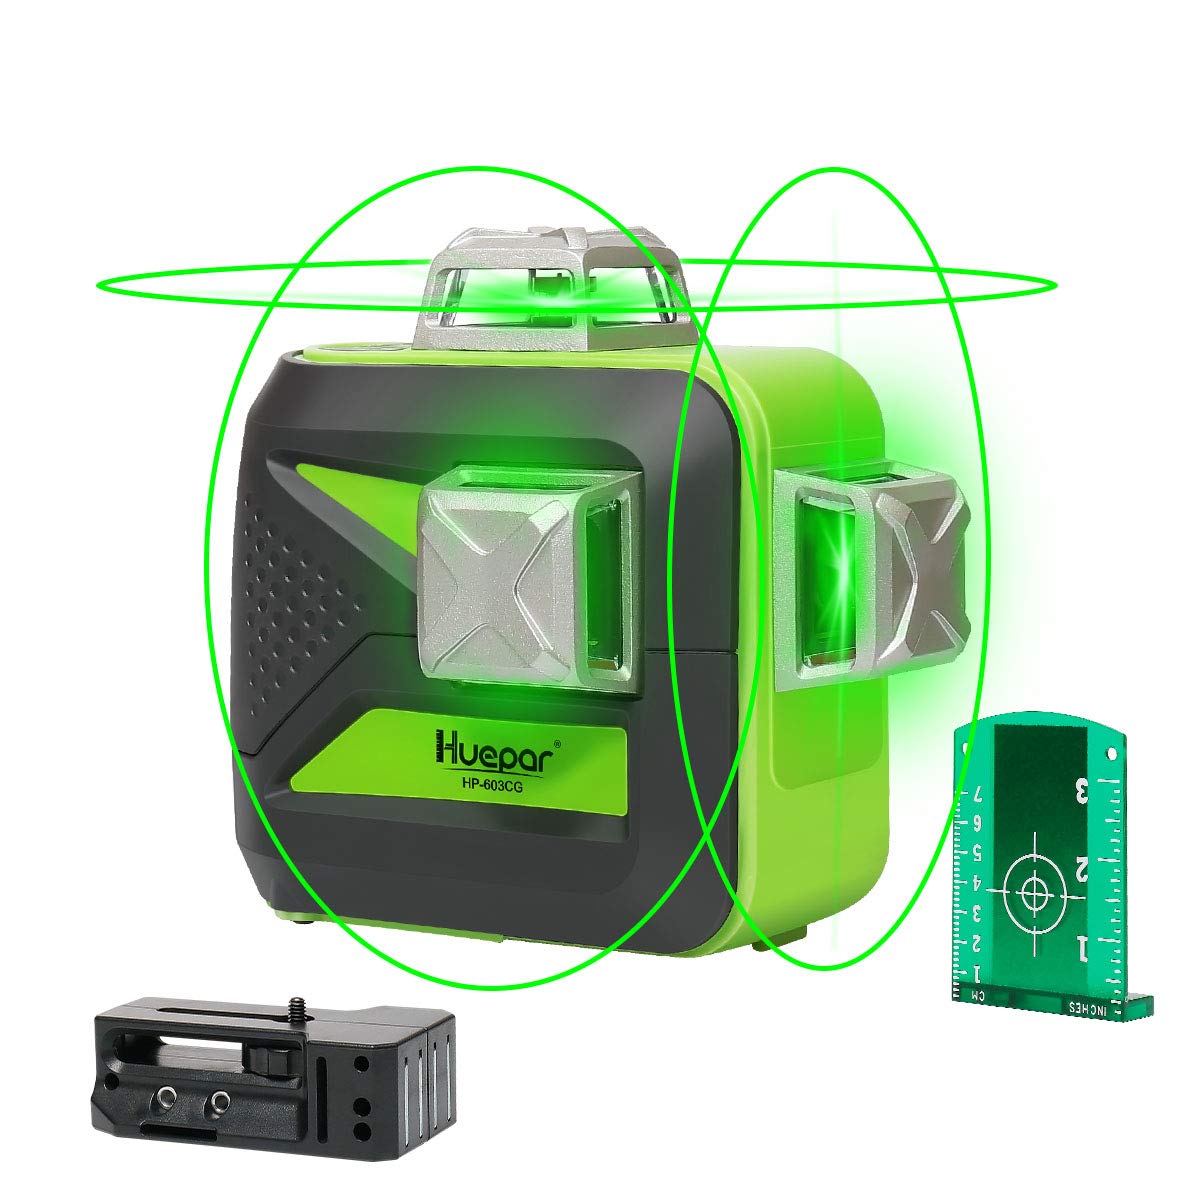  Huepar - Láser de línea cruzada – Nivel láser de línea  horizontal y vertical de haz verde autonivelante con visibilidad de 100  pies, líneas láser brillantes con base giratoria magnética de